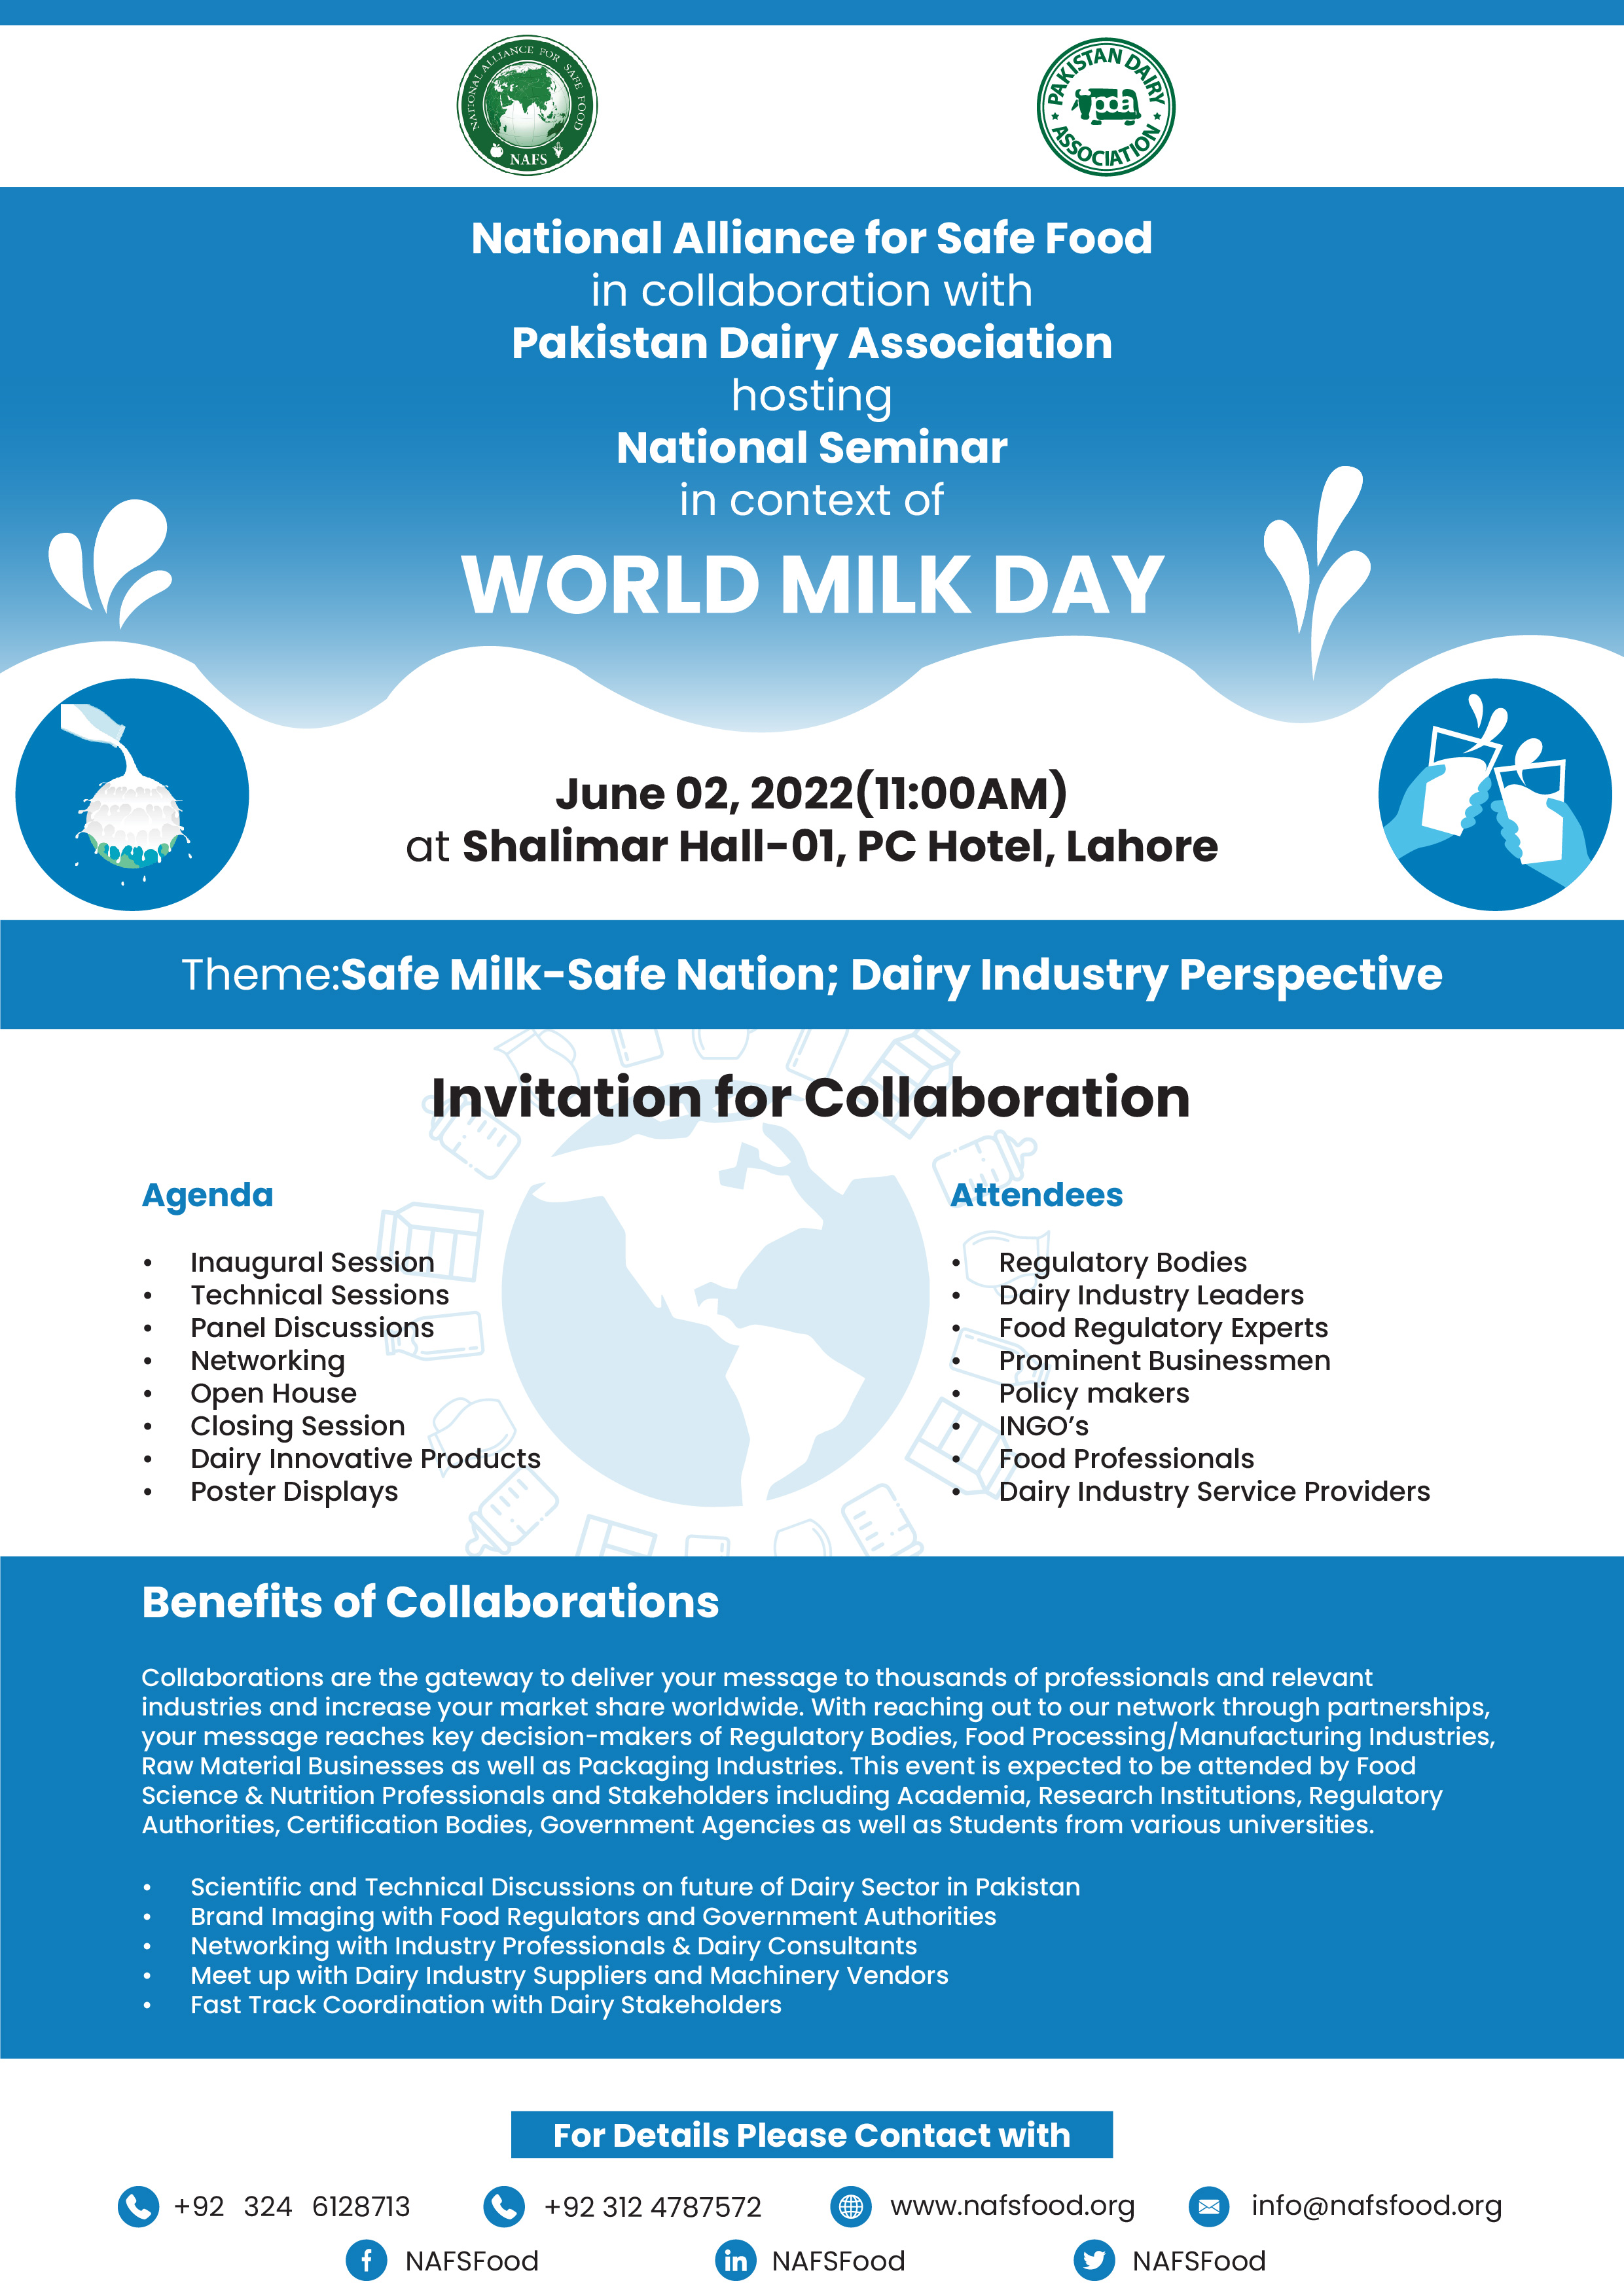 World Milk Day "World Milk Day" Theme Safe MilkSafe Nation; Dairy